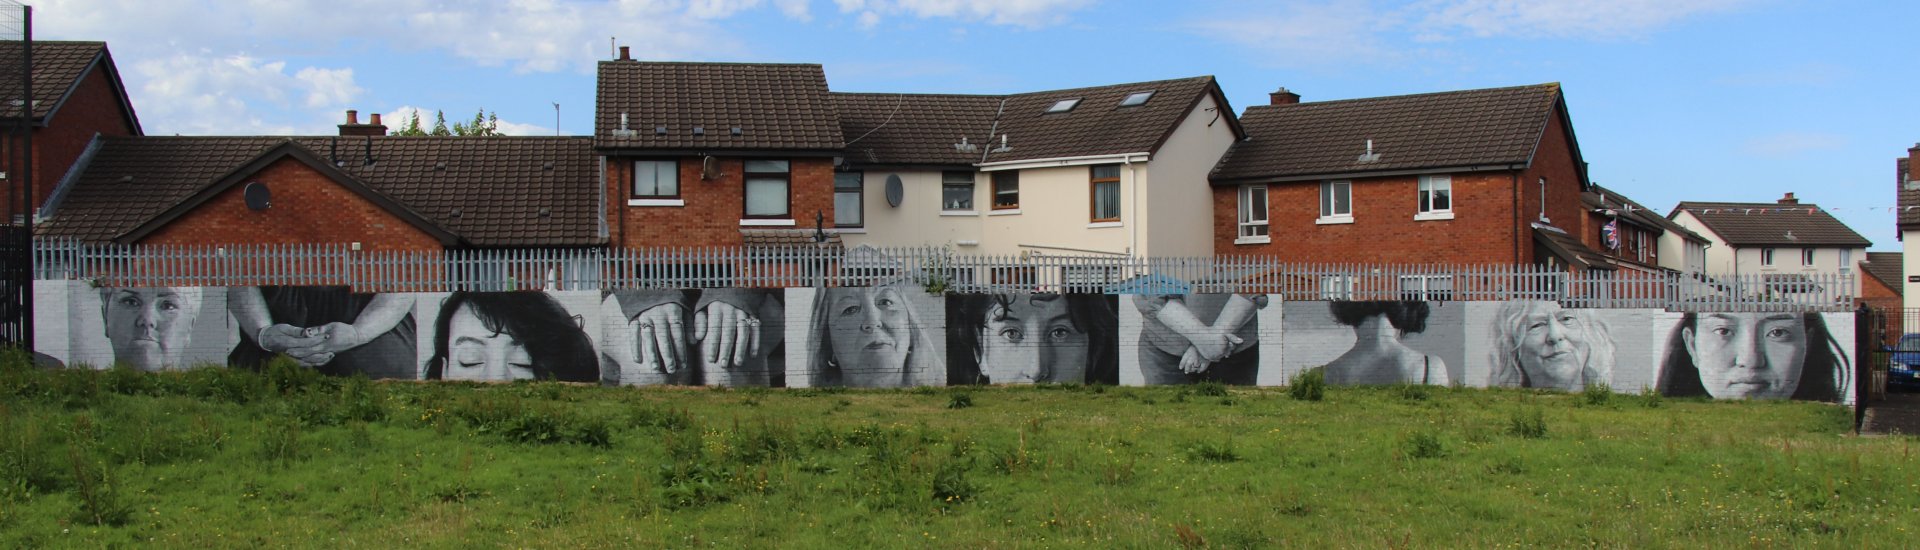 Muurschilderingen in Belfast.